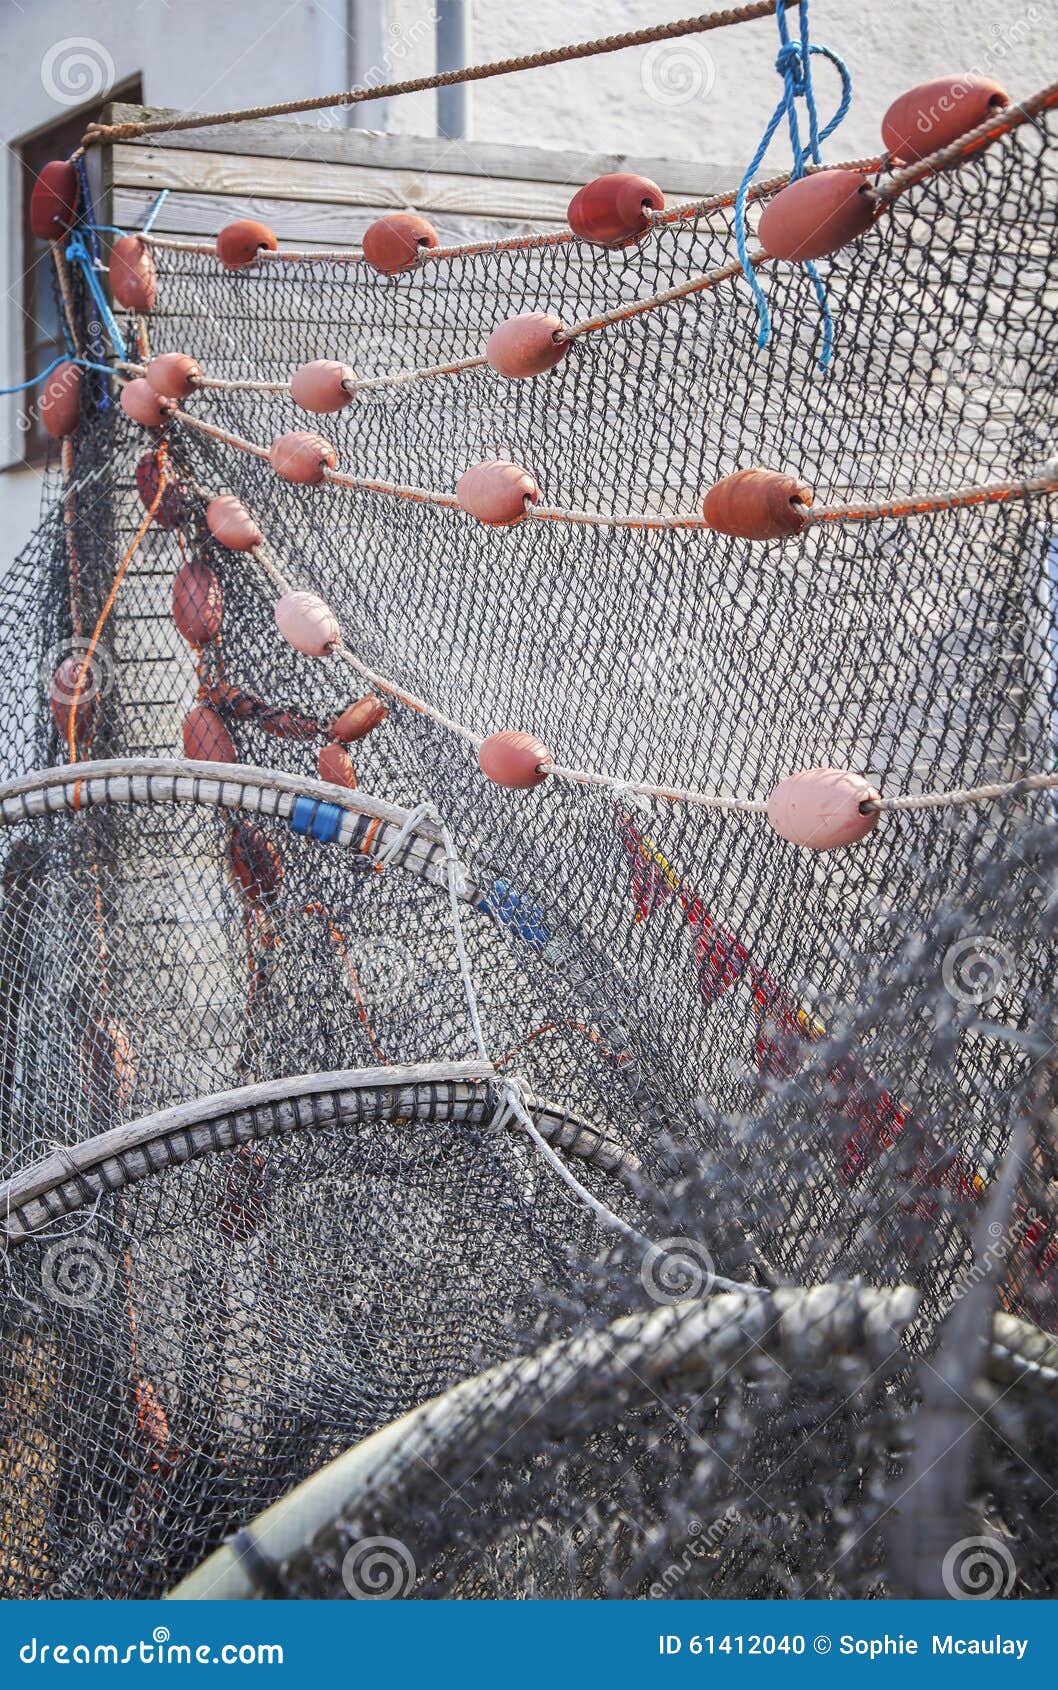 Fish netting stock photo. Image of cord, mesh, cork, maritime - 61412040